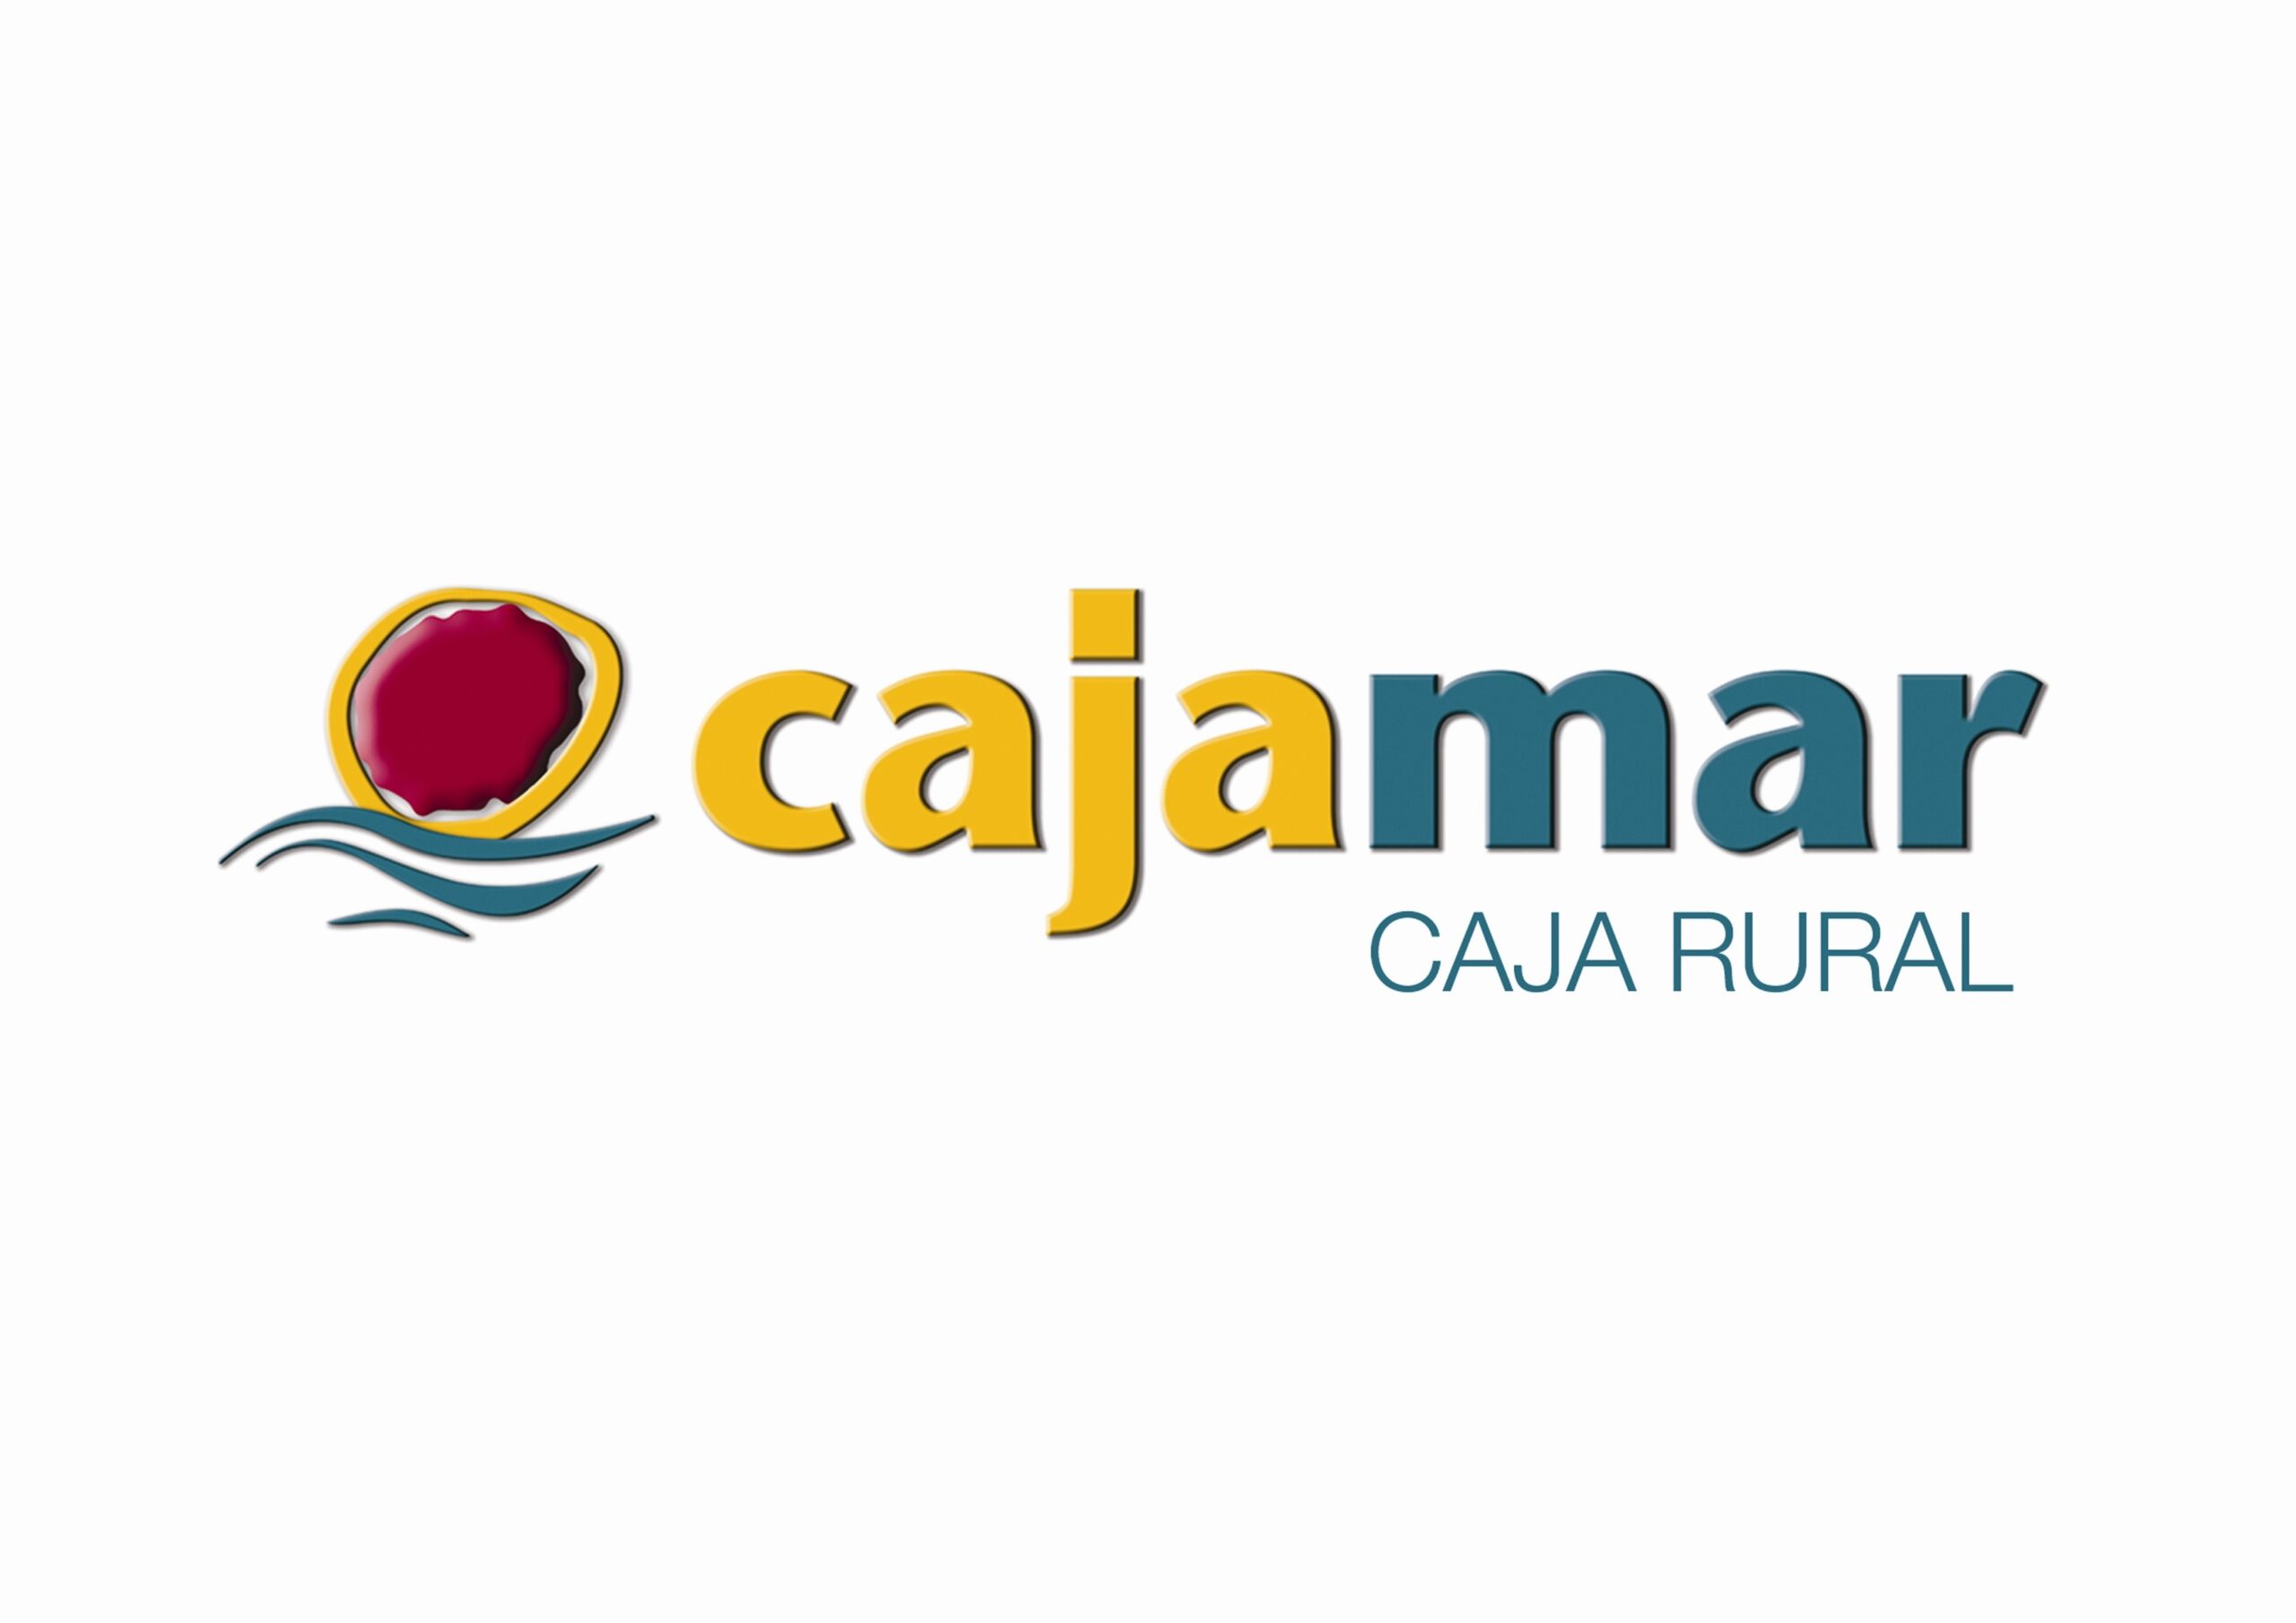 12-astounding-facts-about-cajamar-caja-rural